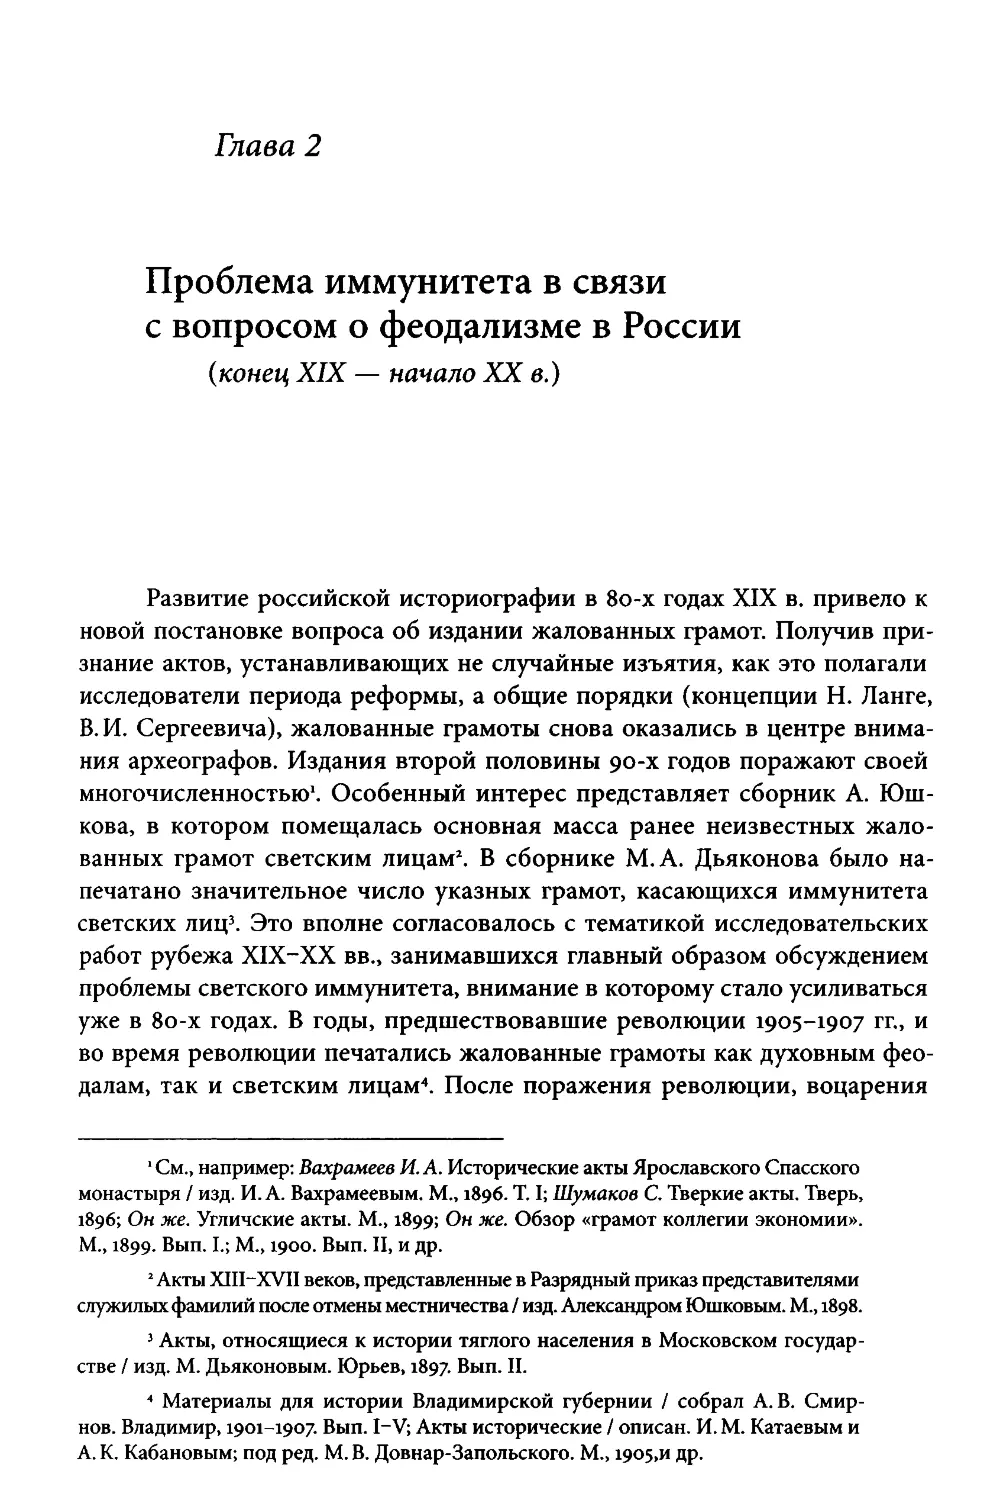 ﻿Глава 2. Проблема иммунитета в связи с вопросом о феодализме в России øконец XIX - начало XX в.